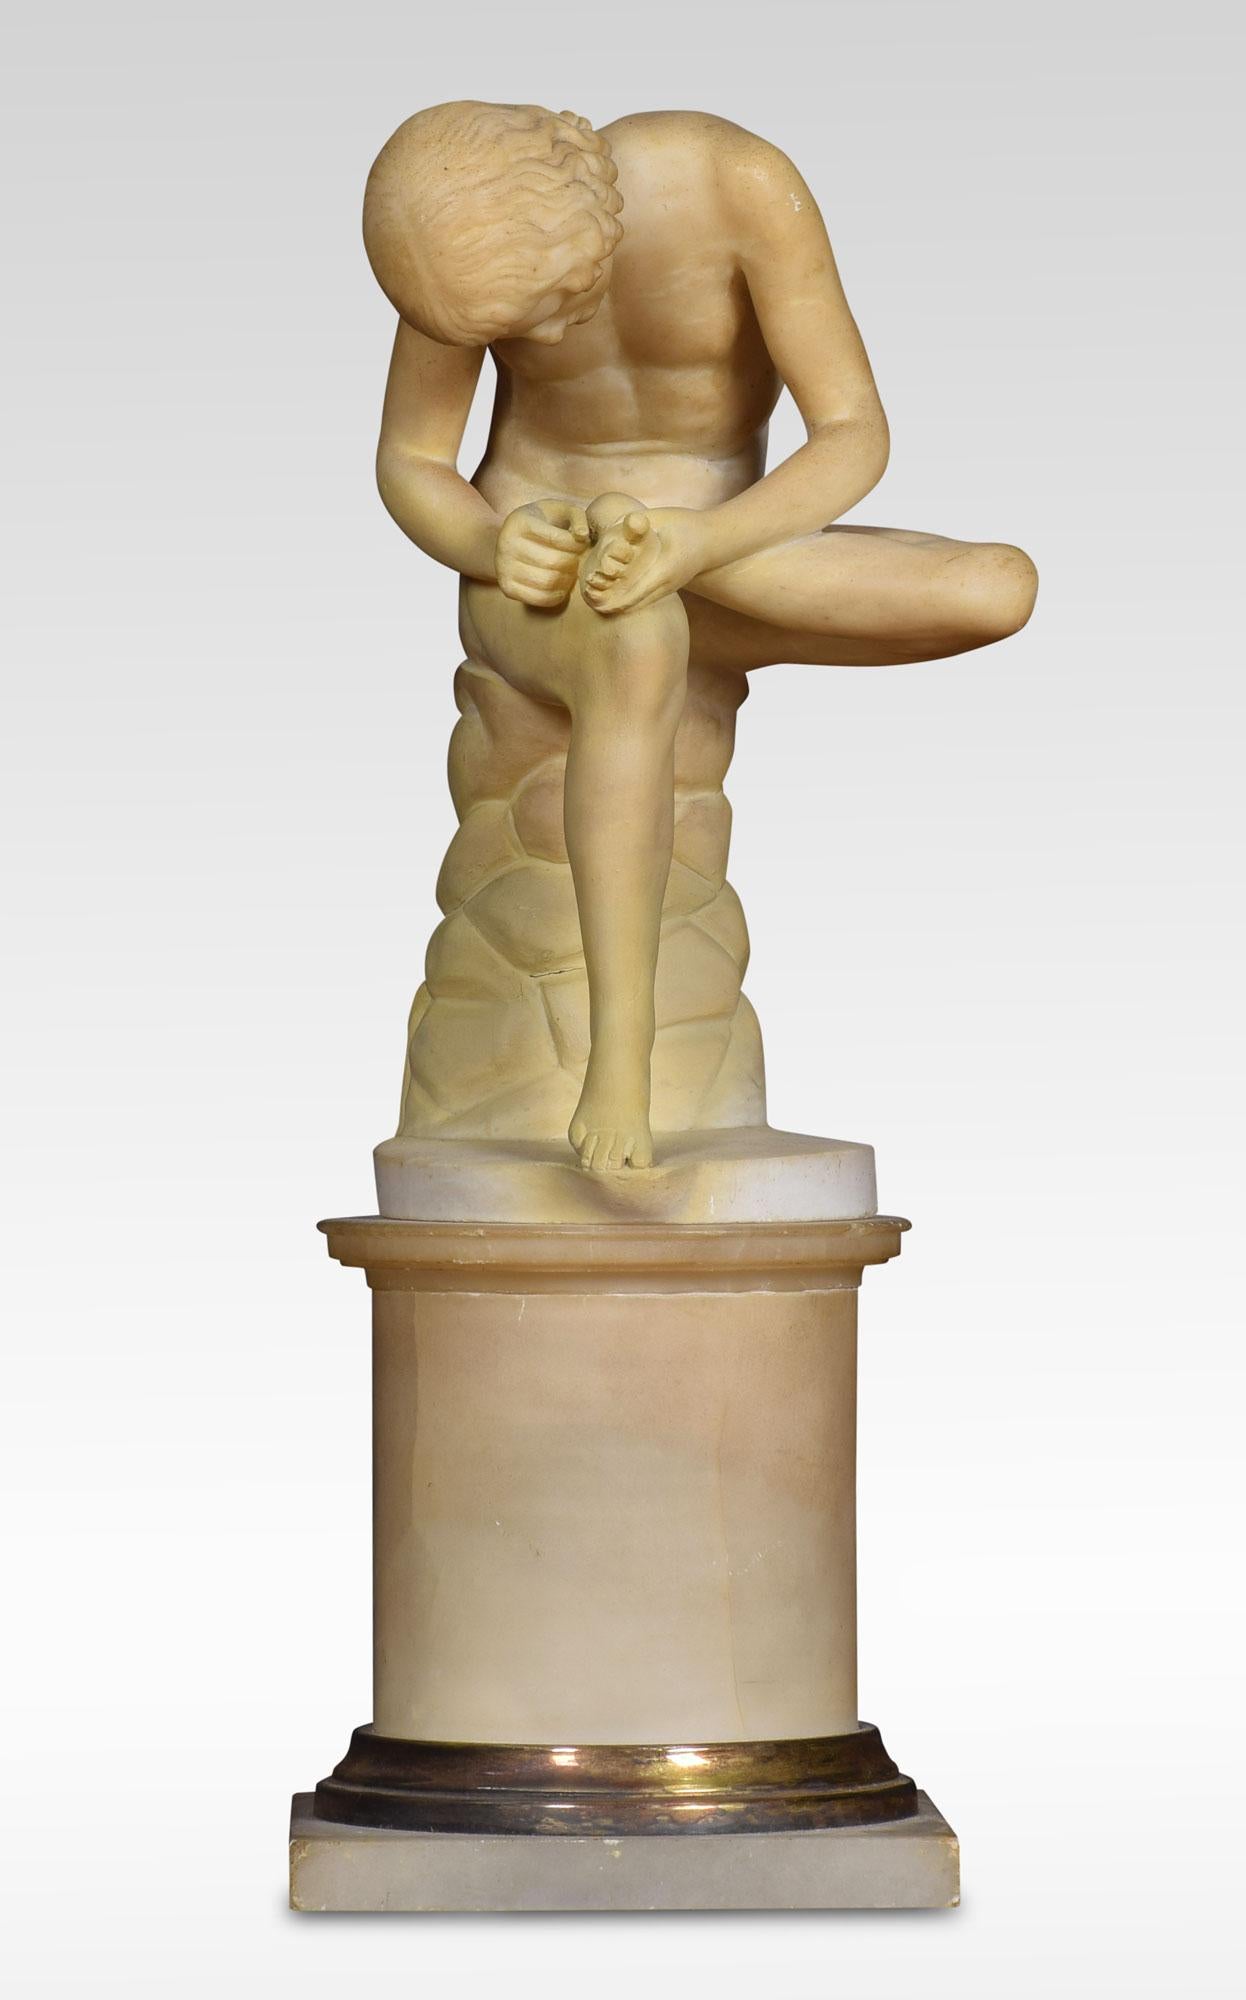 Sculpture en albâtre, statue Spinario d'un garçon avec une épine dans le pied sur un piédestal jaune Scagliola. Il est basé sur un original en bronze antique qui se trouve au musée du Capitole à Rome.
Mesures : Hauteur 14.5 pouces
Longueur 5.5